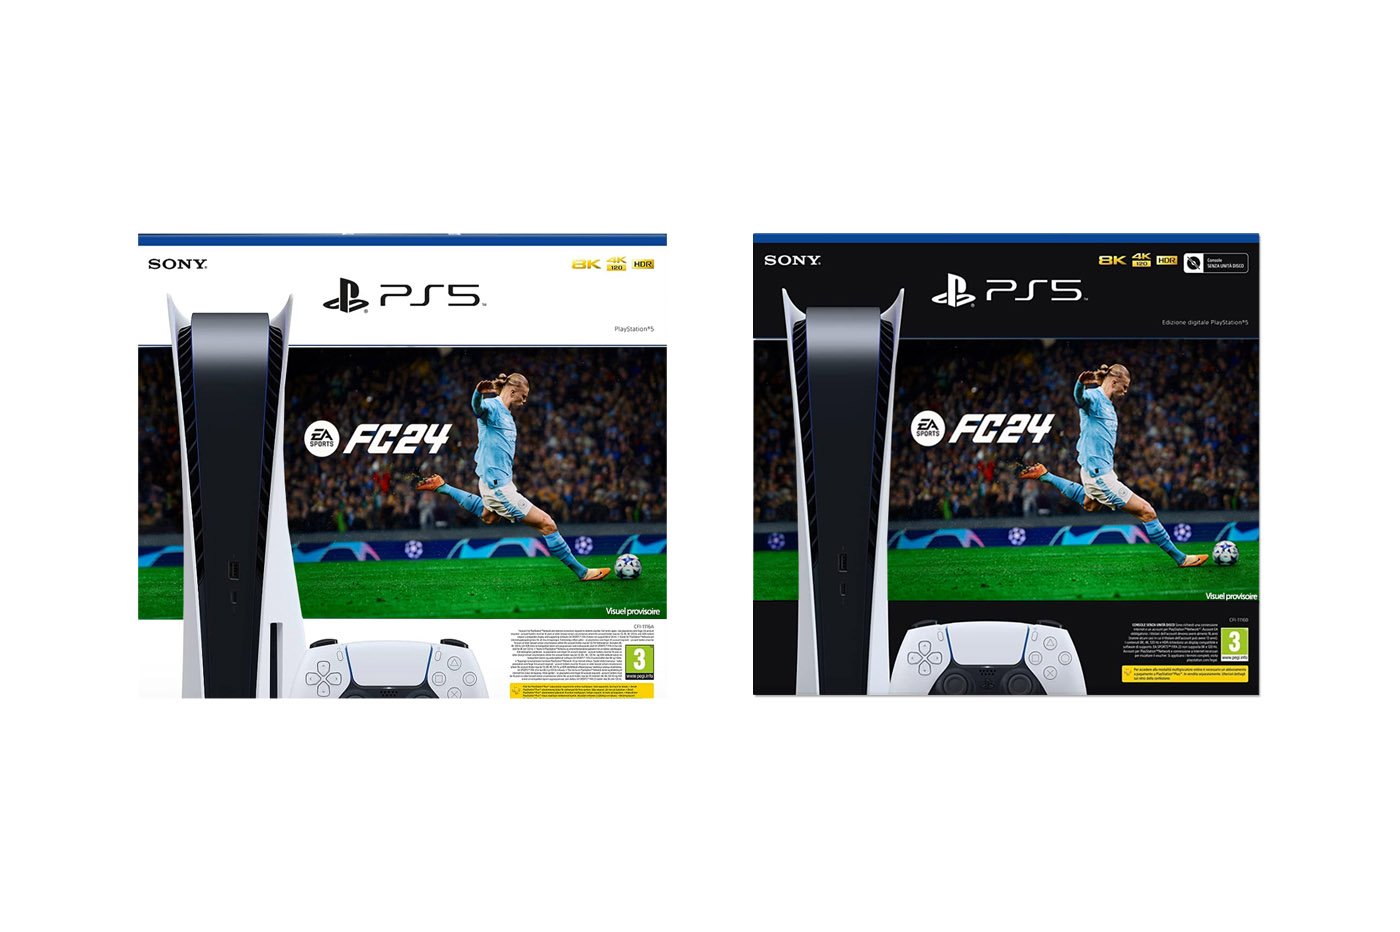 EA Sports FC 24 Standard Edition Switch - Jeux vidéo - Achat & prix